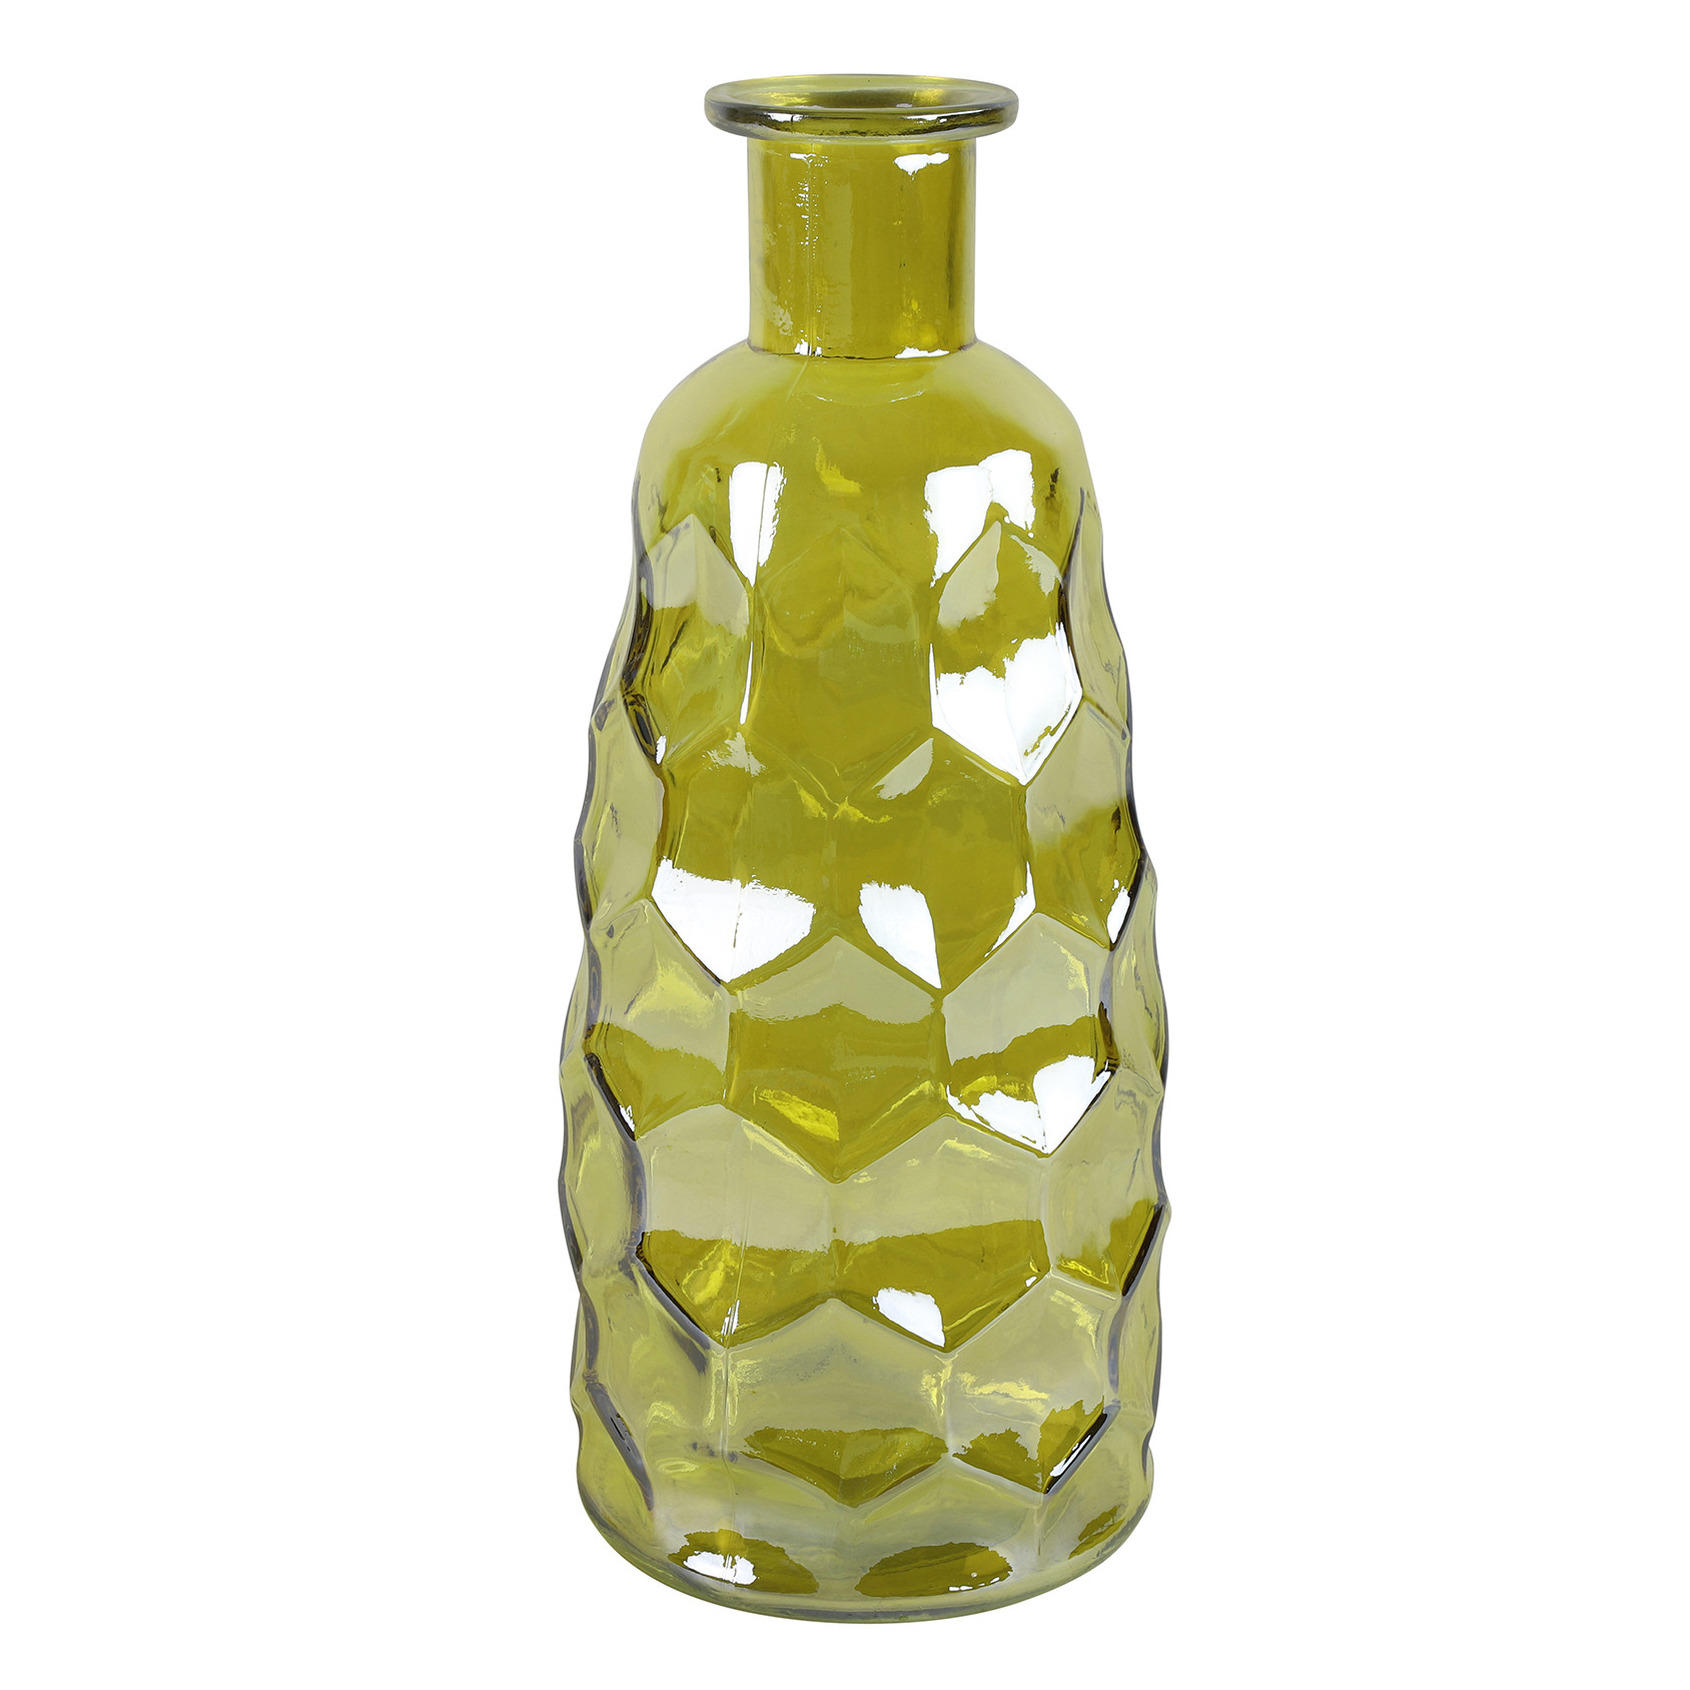 Countryfield Art Deco bloemenvaas geel transparant glas fles vorm D12 x H30 cm